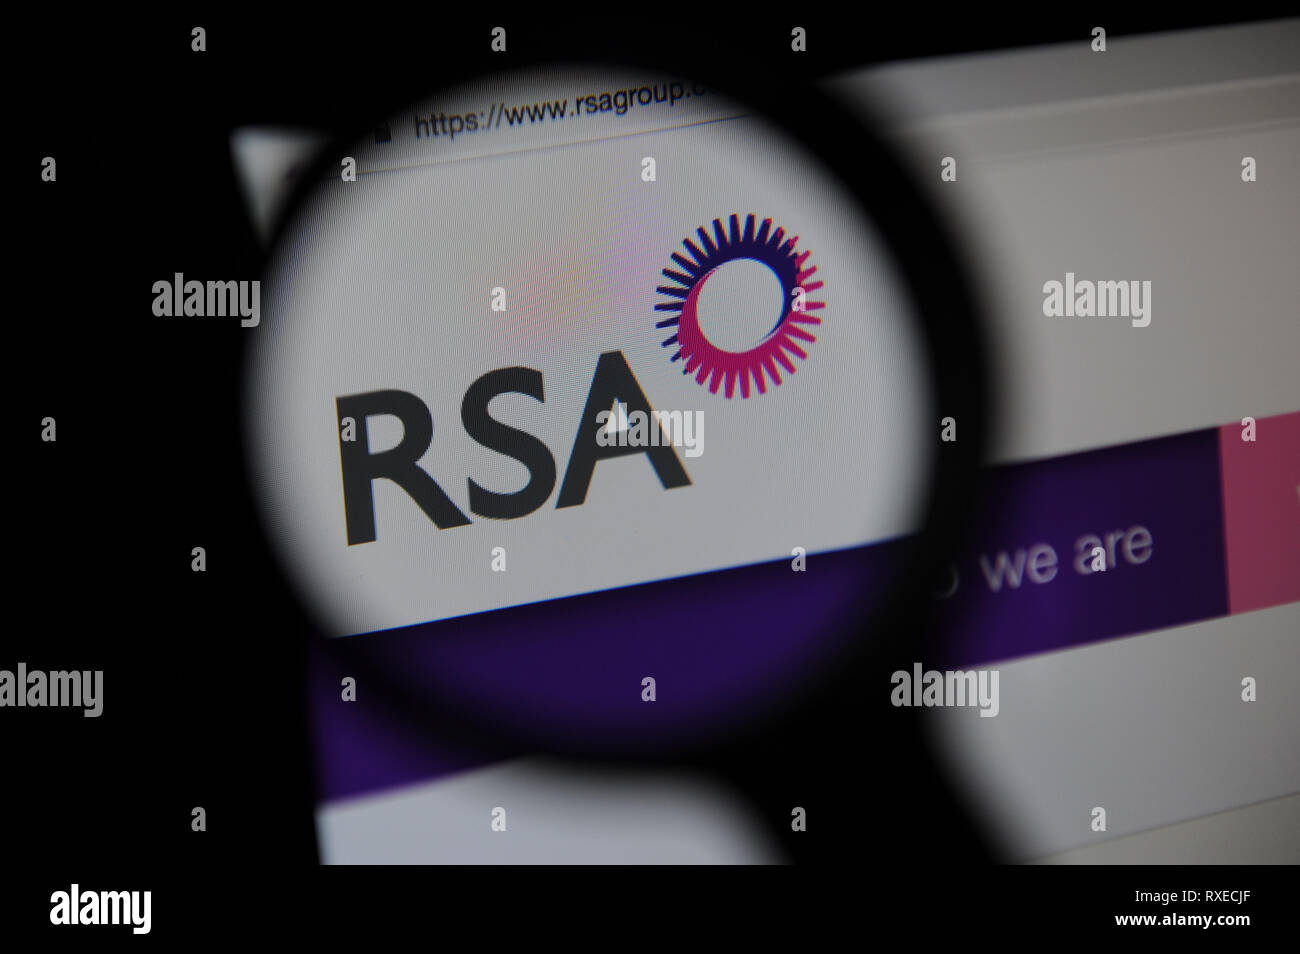 El sitio web de RSA vistos a través de una lupa Foto de stock